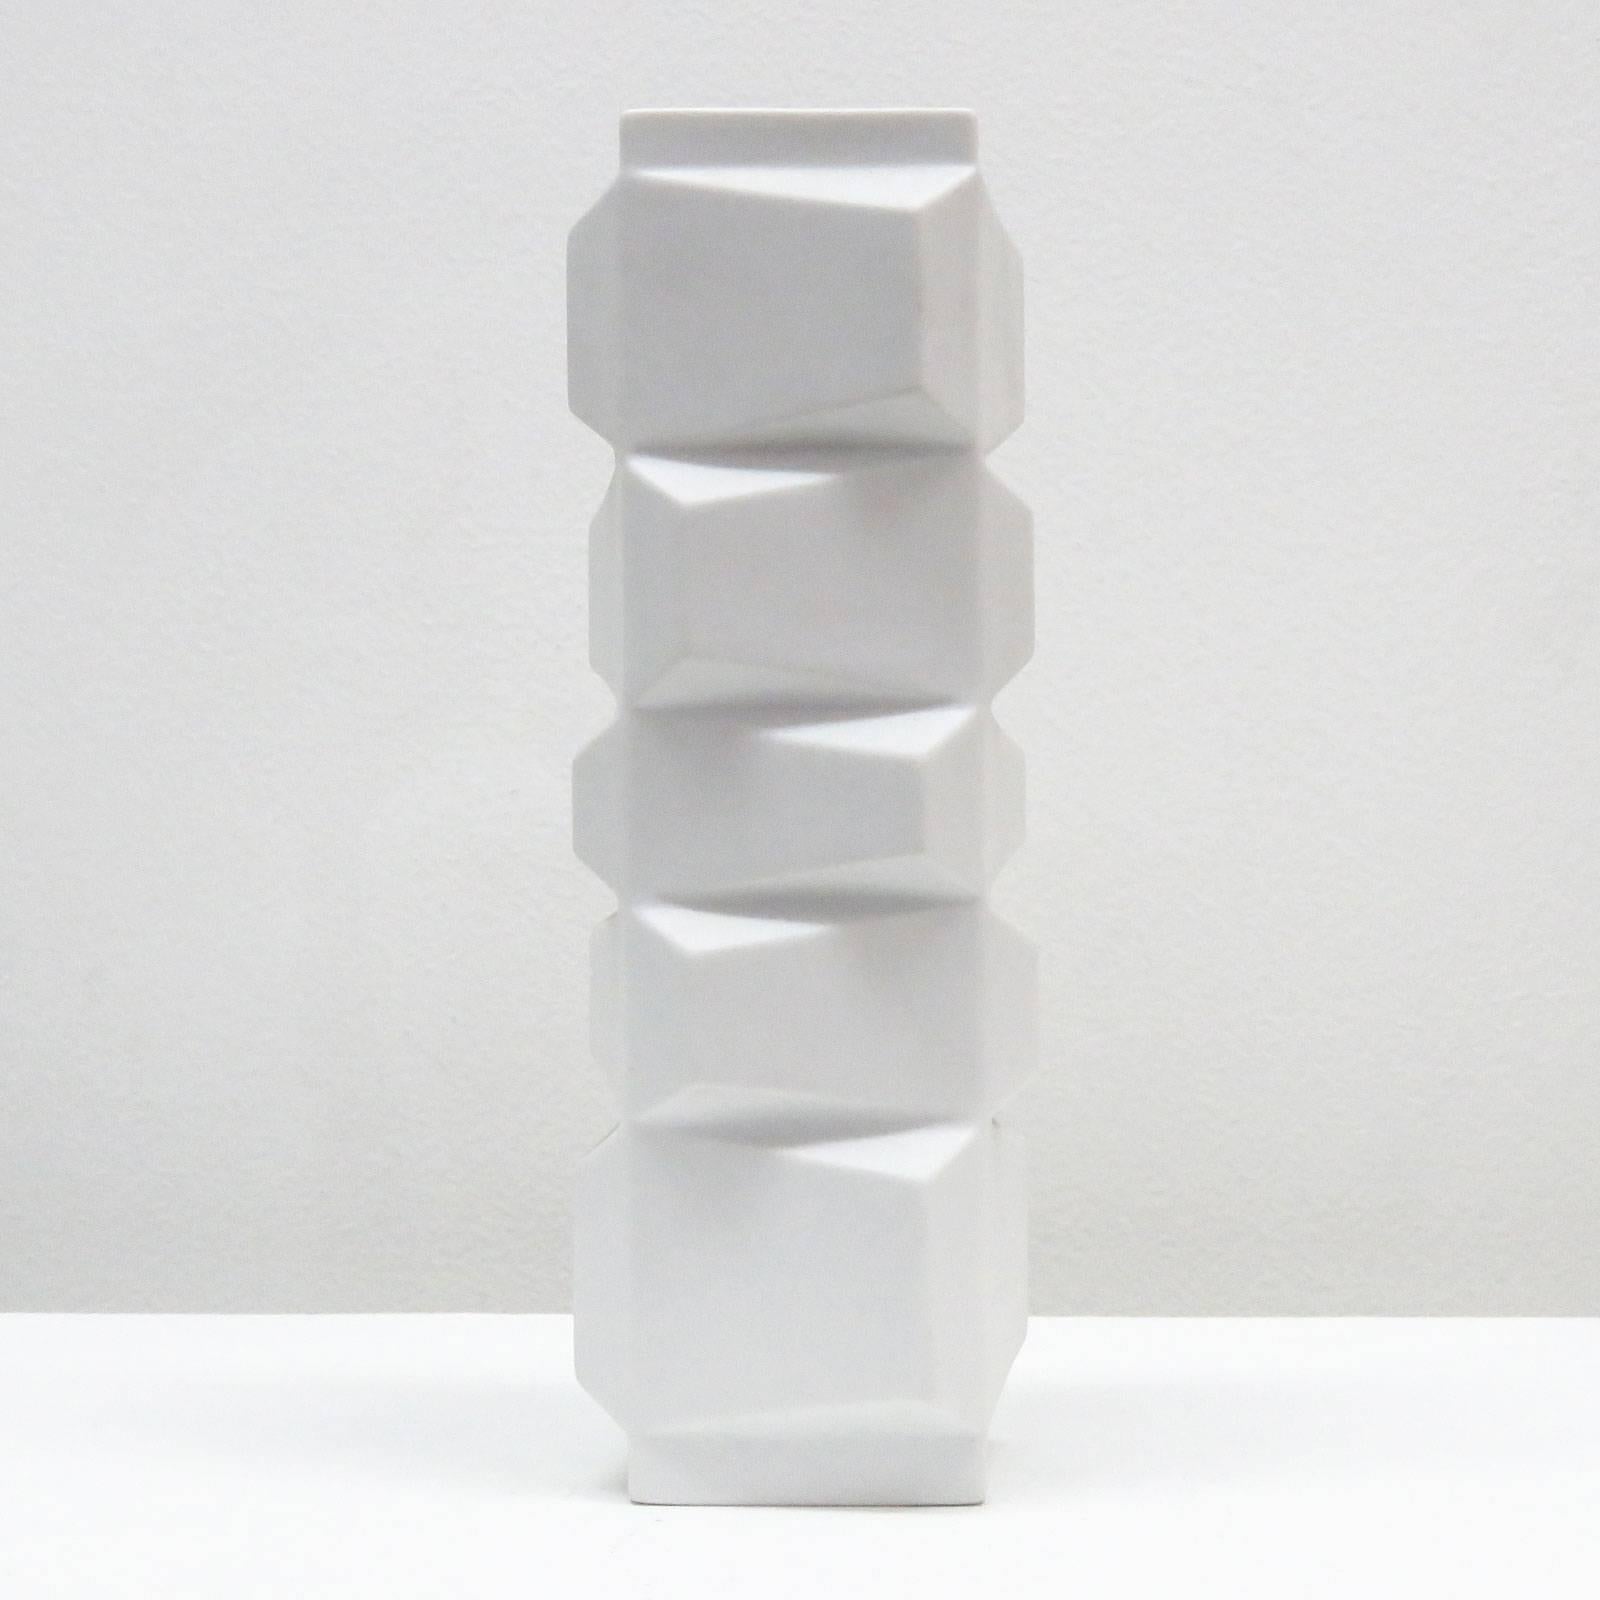 Merveilleux vase géométrique en porcelaine bisque de Heinrich Fuchs pour Hutschenreuther, sorti entre 1968 et 1970, avec un extérieur mat et un intérieur émaillé, marqué Fuchs 5092/27.